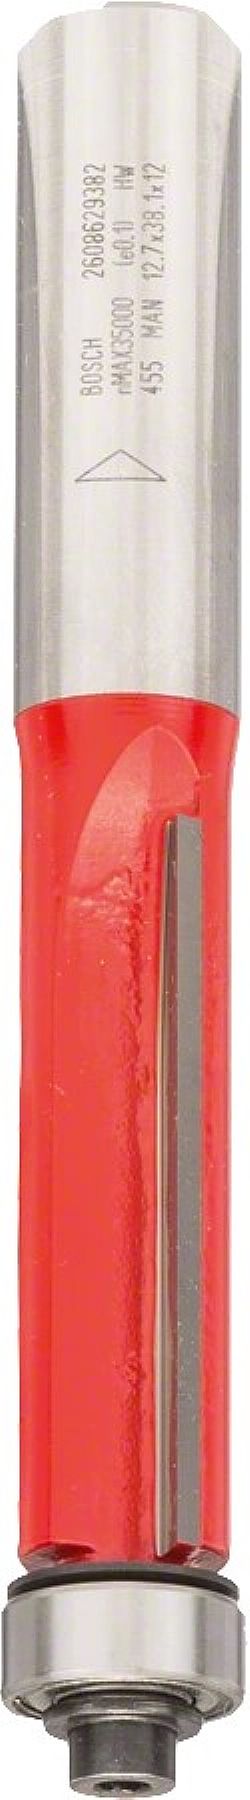 Κοπτικό Ρούτερ Φρέζα Κουρέματος με Ρουλεμάν οδηγό 12mm (D)12.7mm/(L)38,5mm κάτω Δίκοπη Σκληρομέταλλο BOSCH 